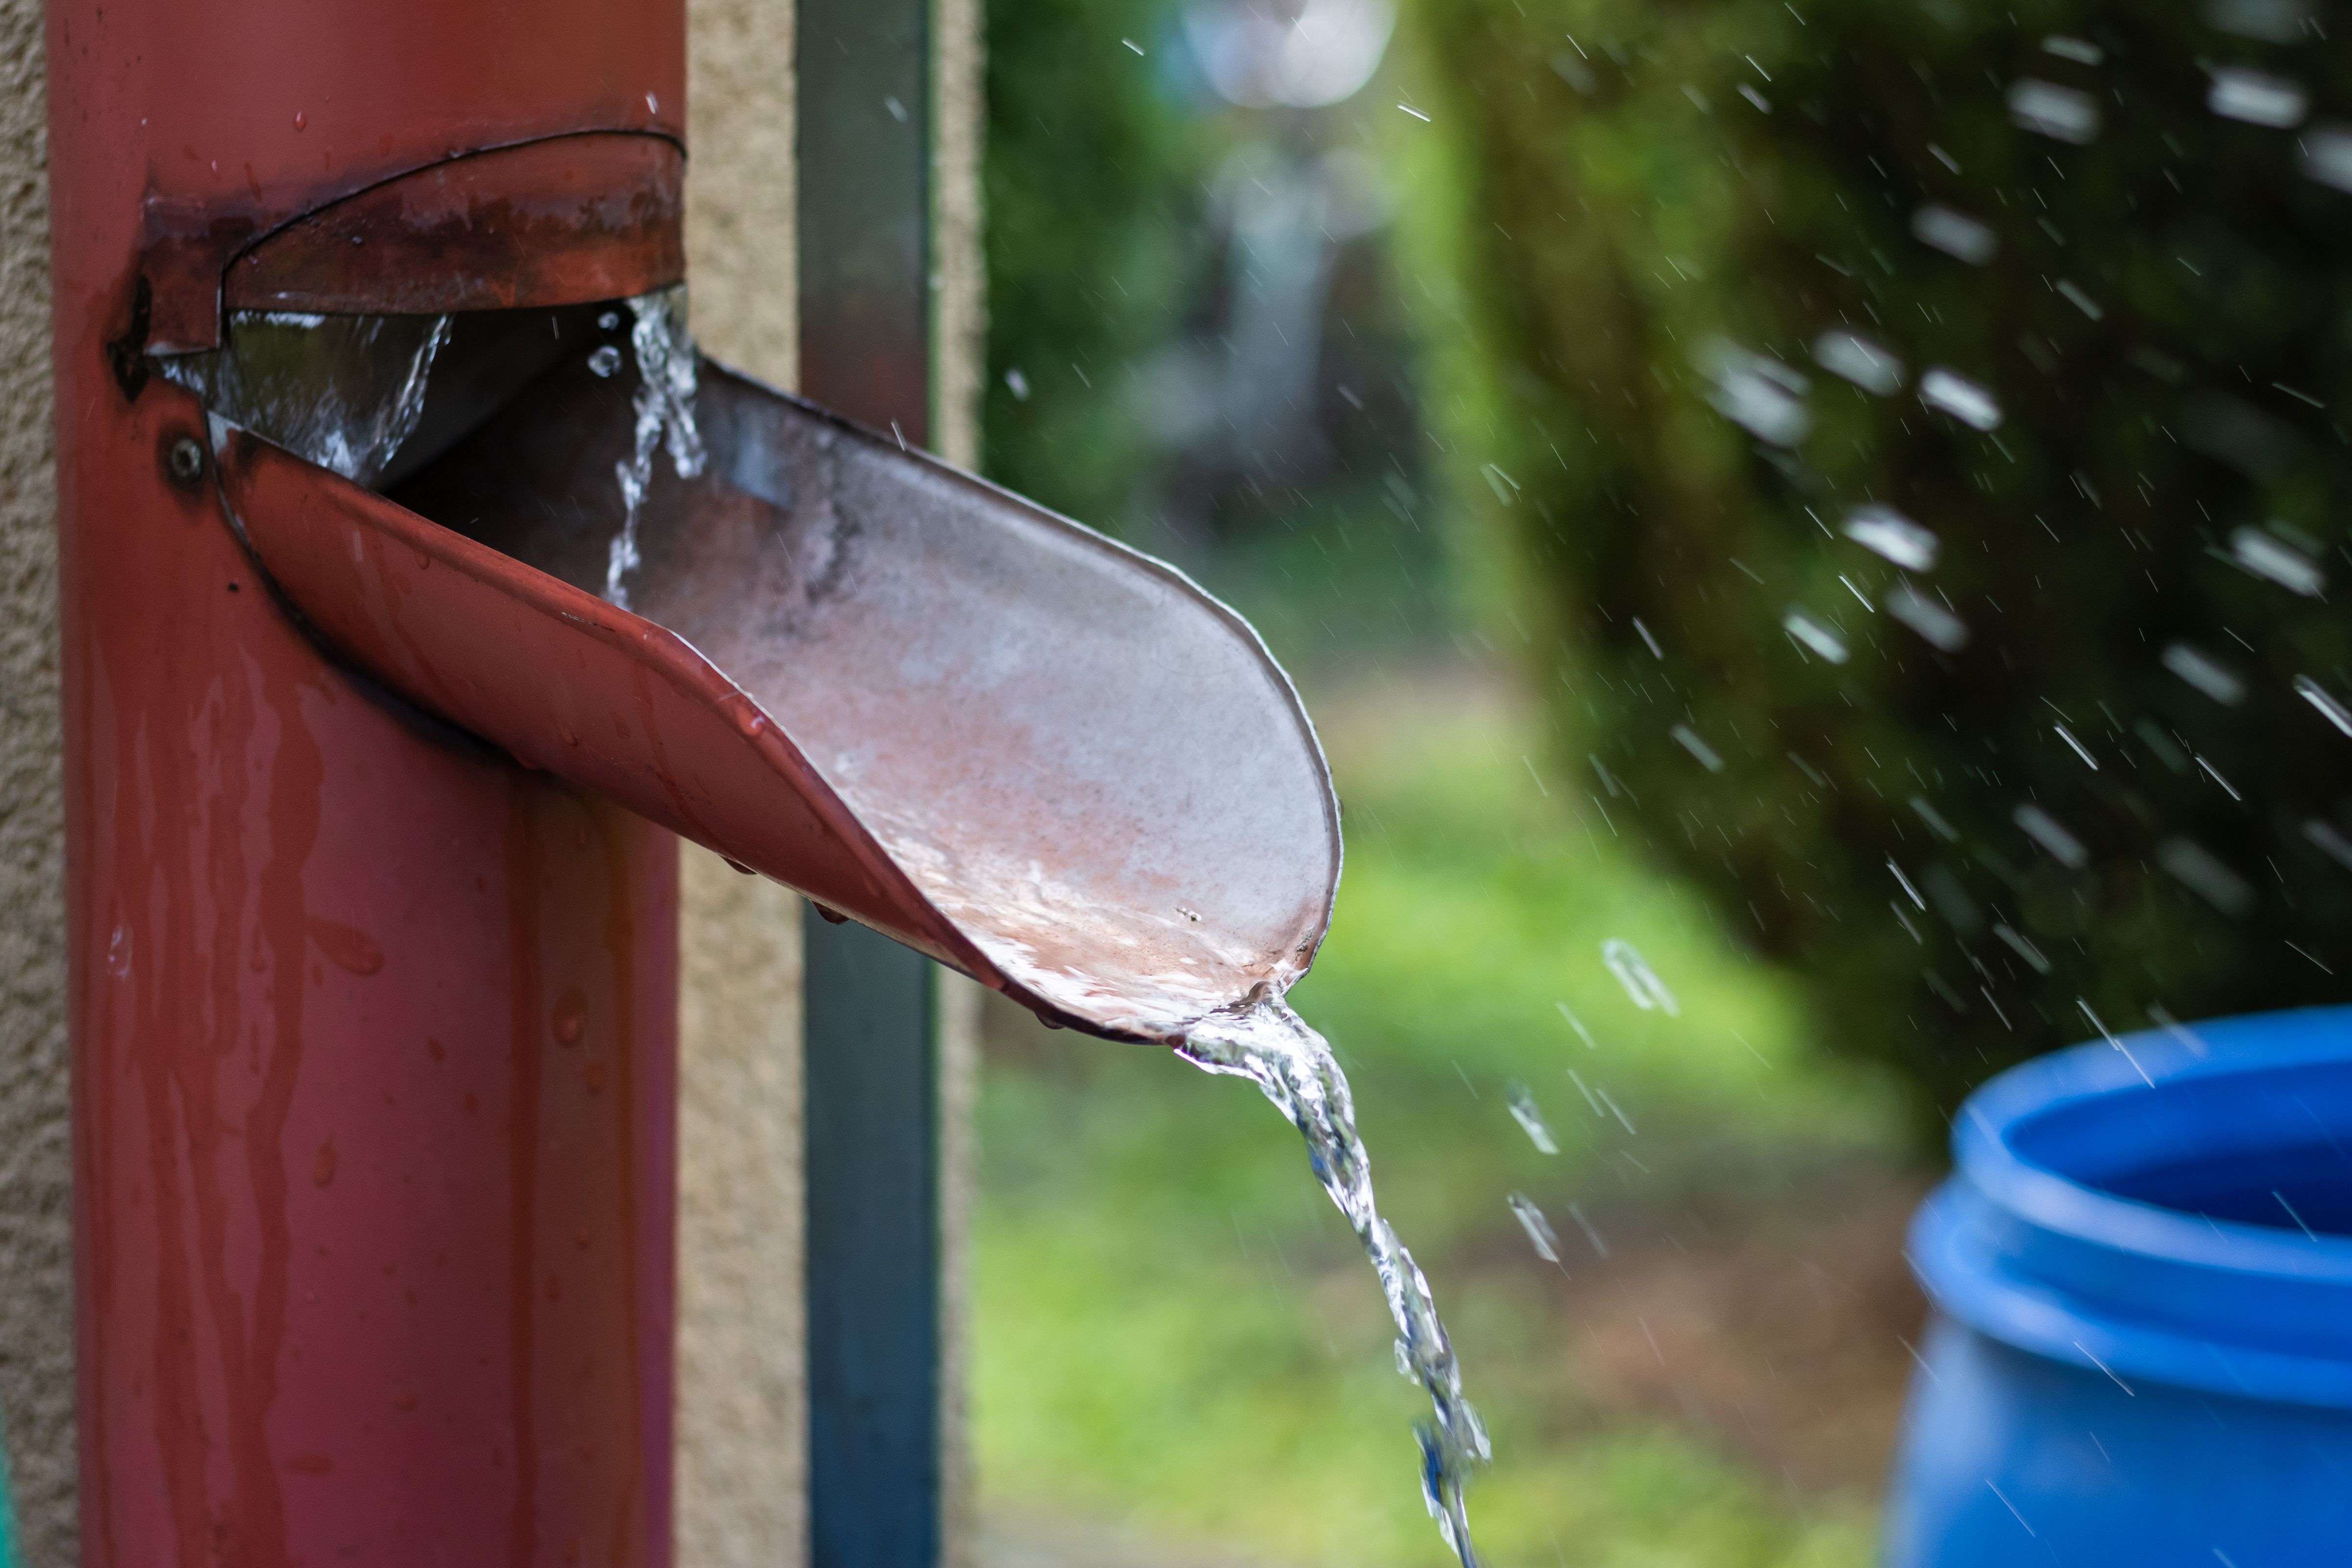 Cómo recuperar el agua de lluvia: depósito exterior o depósito enterrado